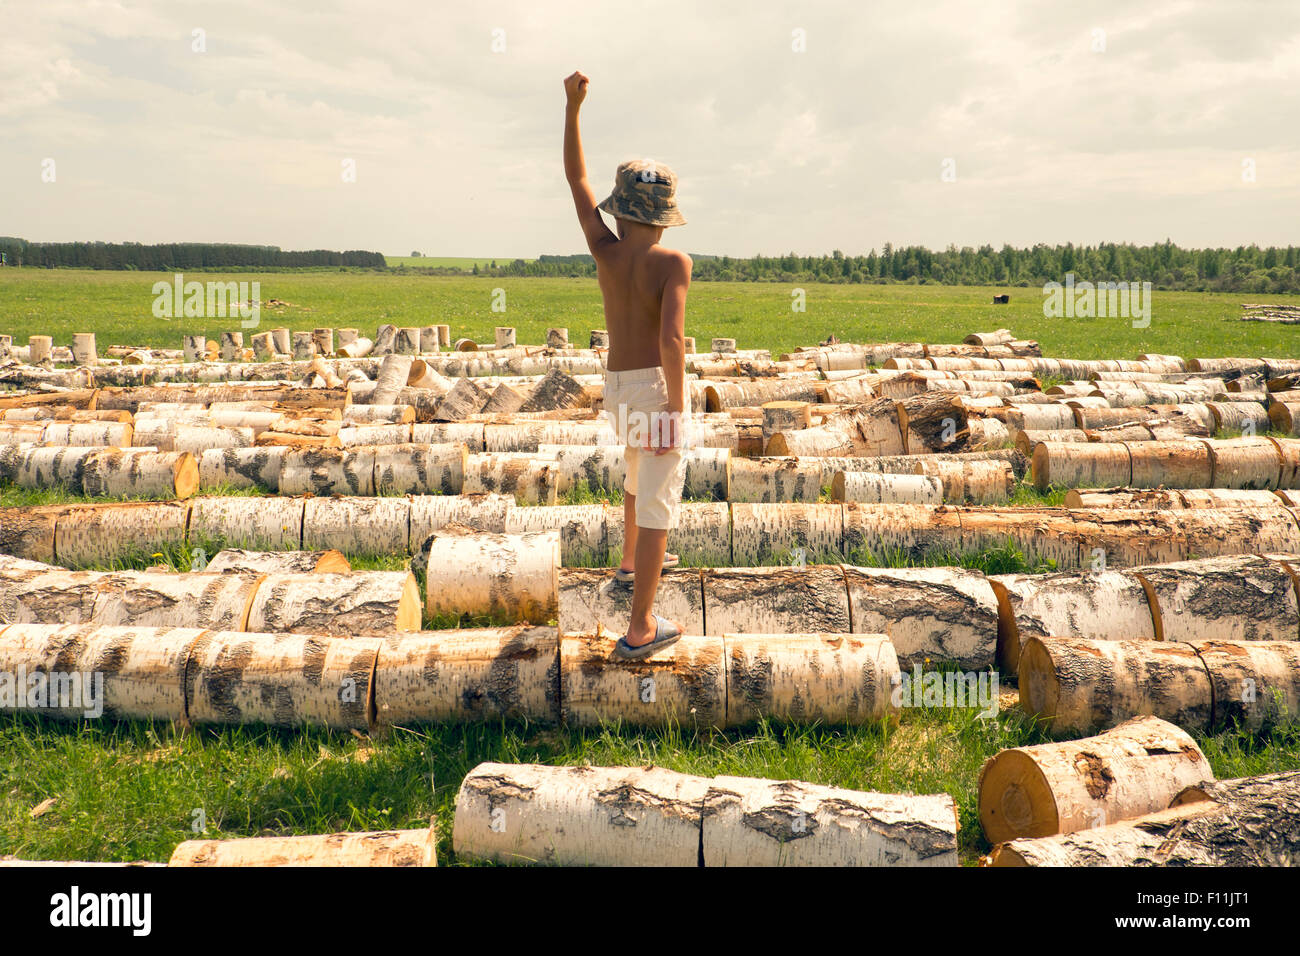 Mari boy in piedi su log in campo rurale Foto Stock